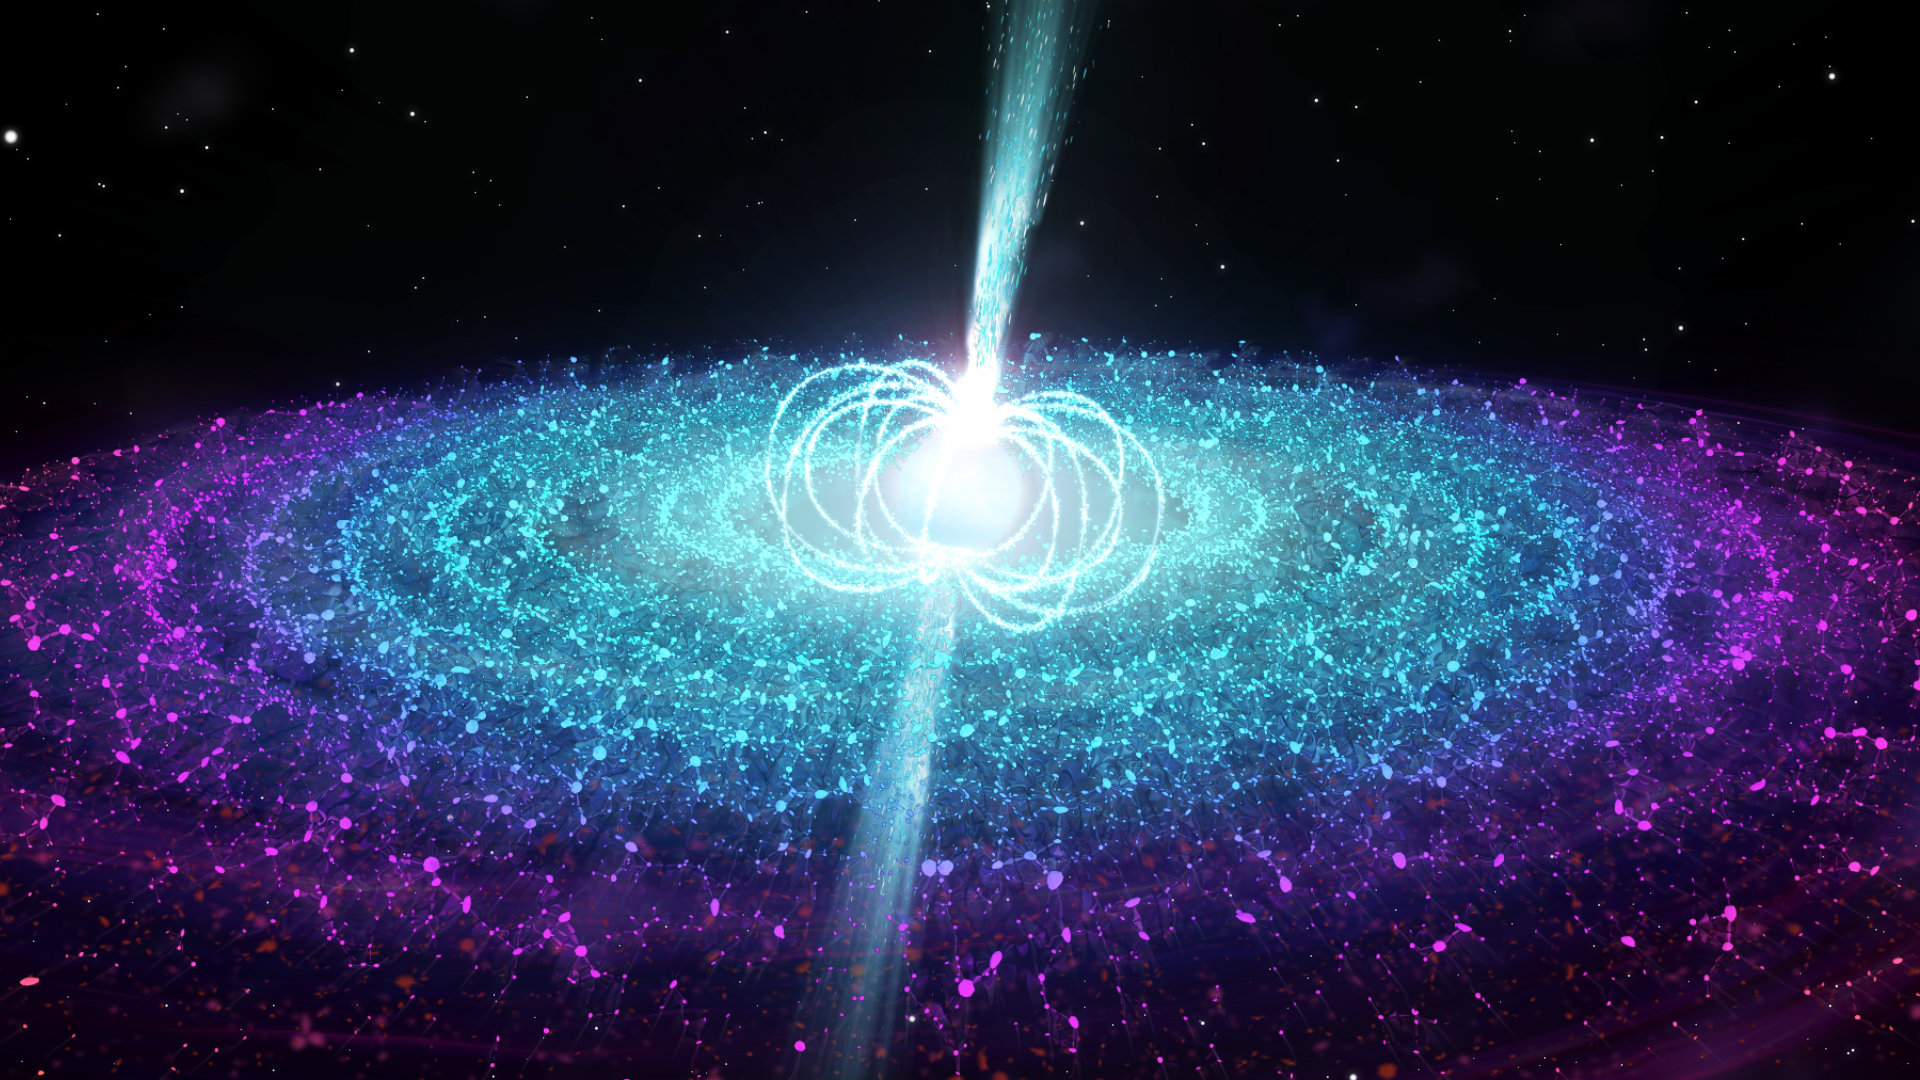 Heaviest neutron star found is 2.35 times mass of Sun